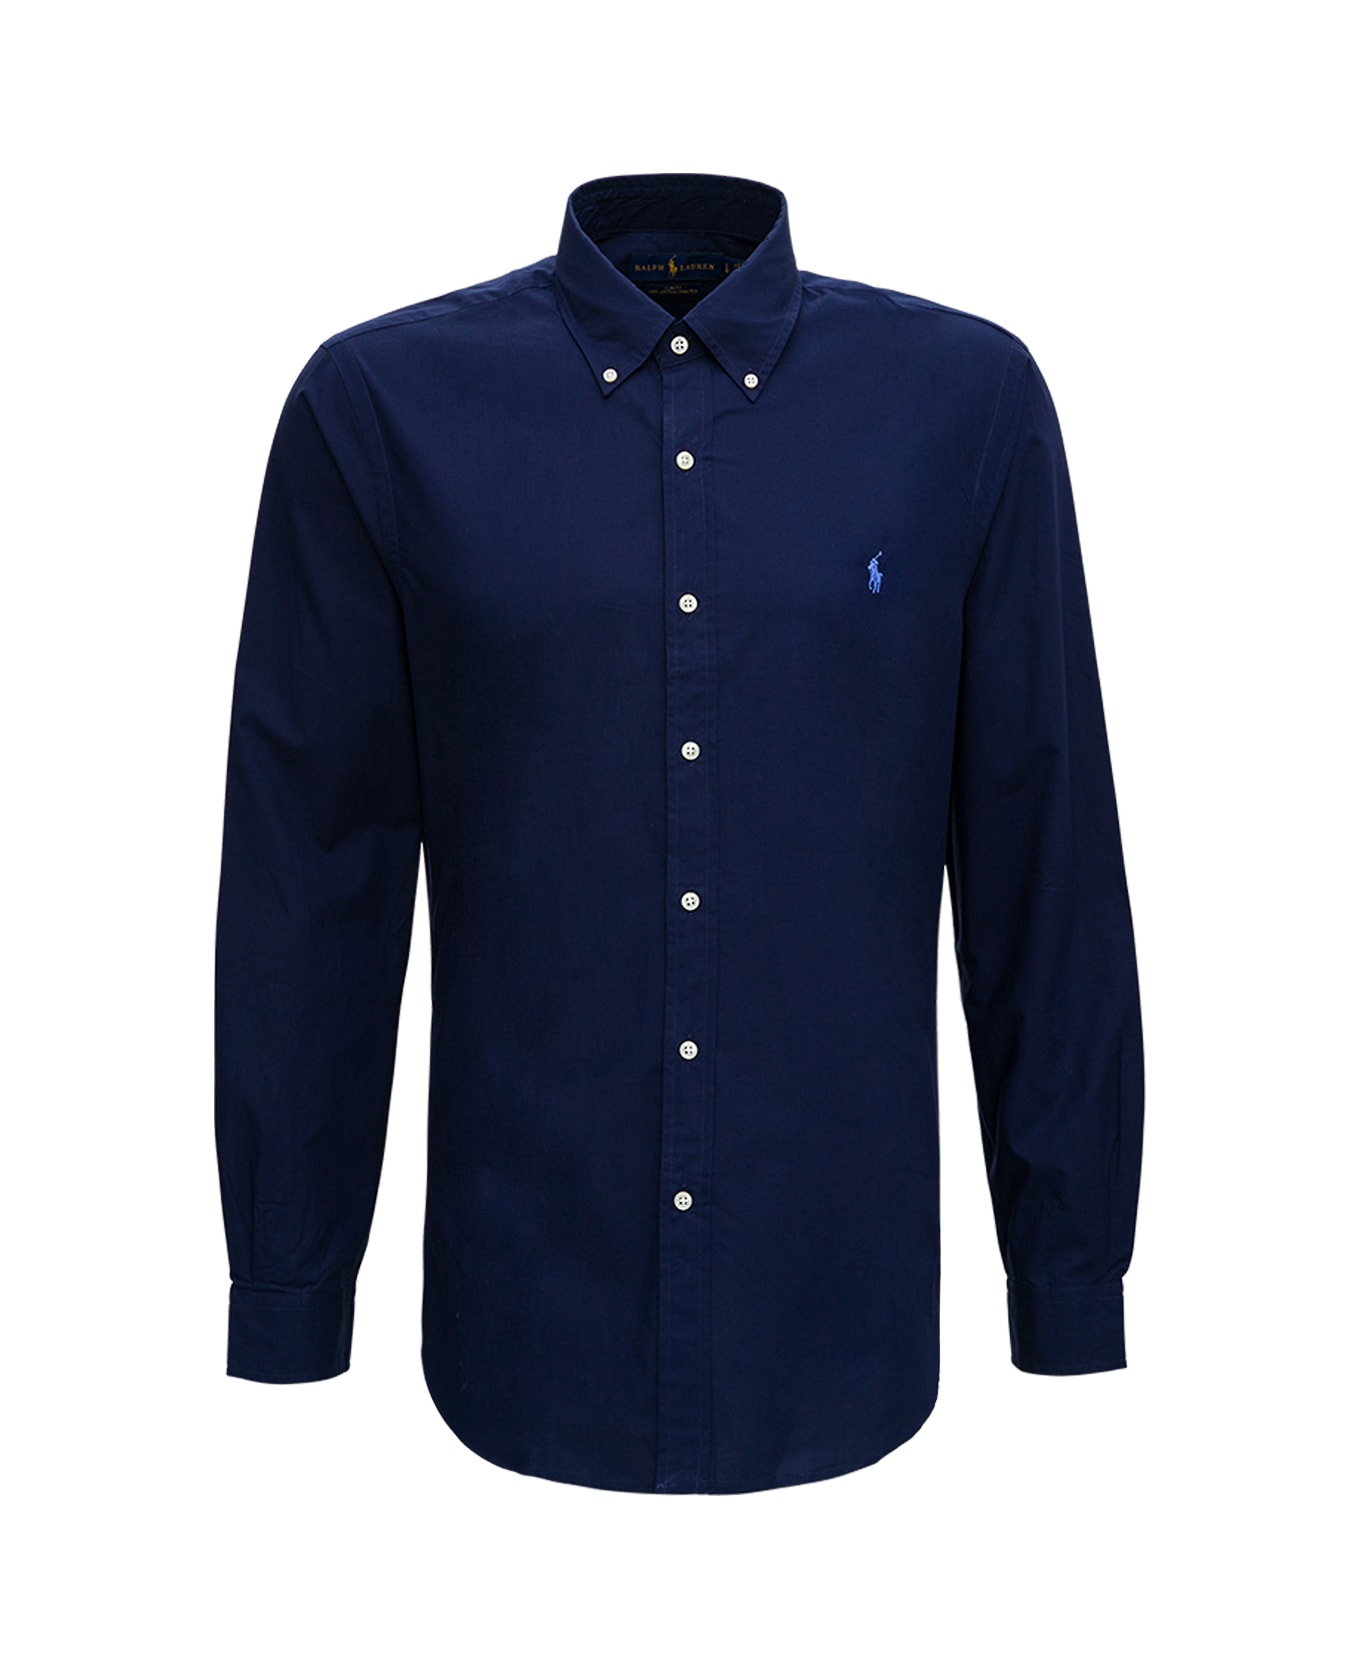 Ralph Lauren Blue Cotton Shirt With Logo - Newport Navy